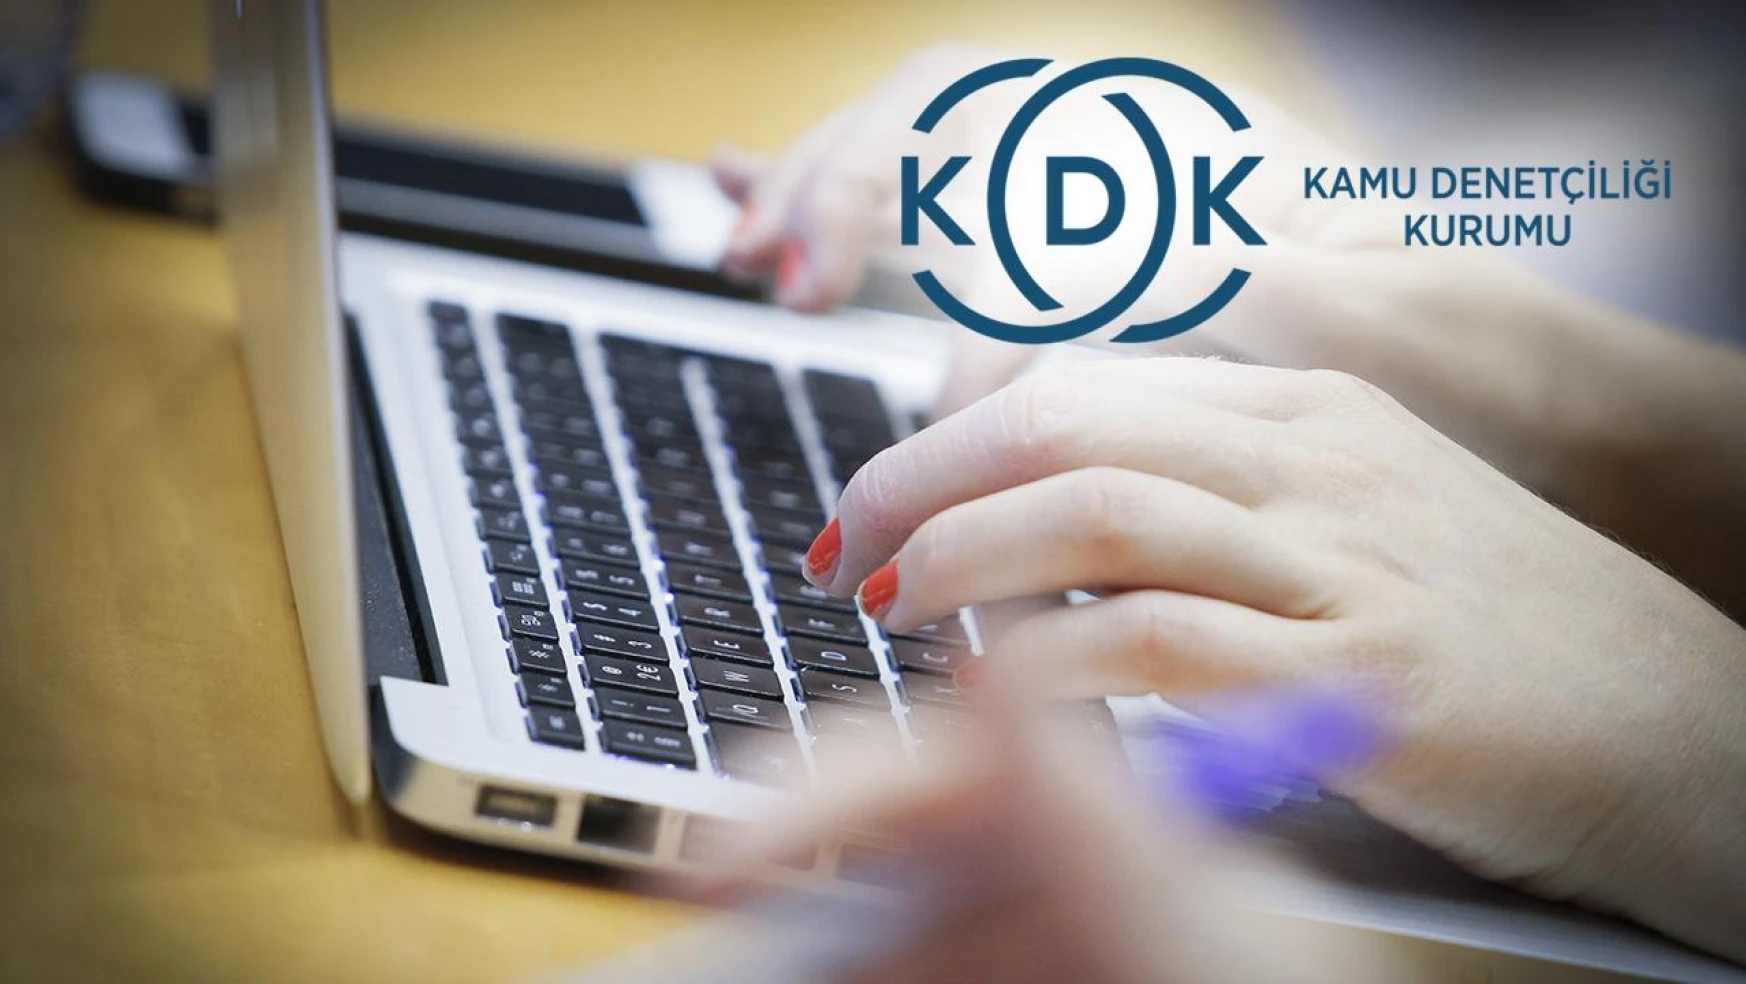 KDK'den üst öğrenimi bitirenlerin tazminatlarına ilişkin kritik karar